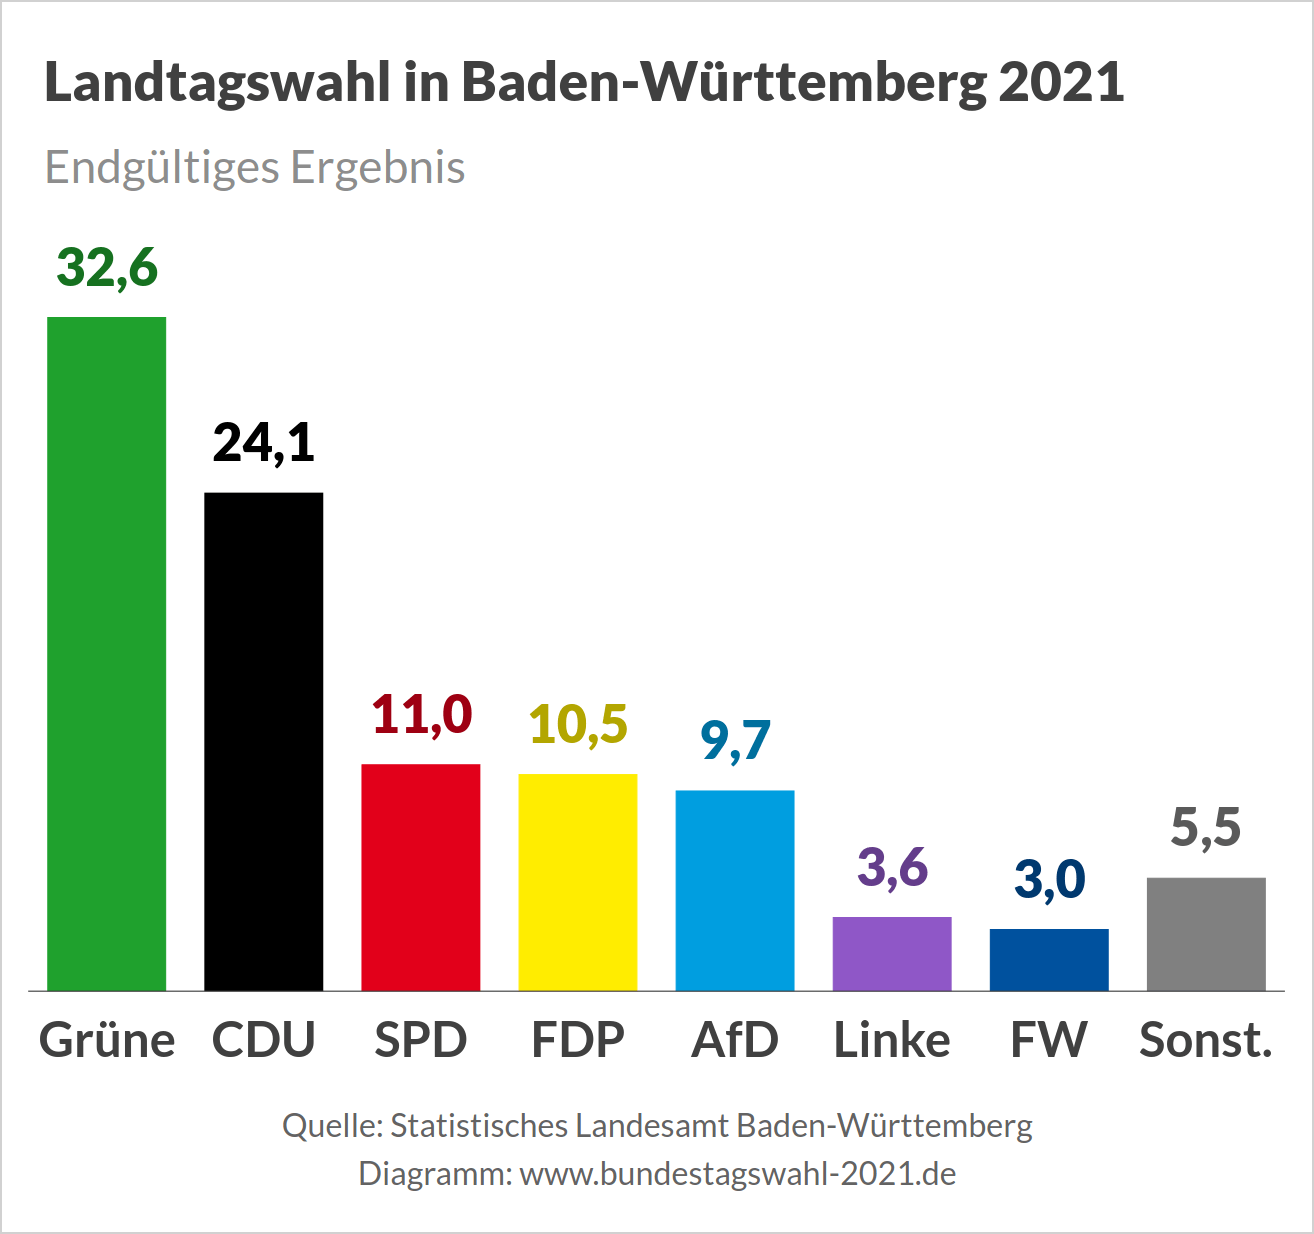 Landtagswahl in Baden-Württemberg, Wahlergebnis (Endgültiges Ergebnis)